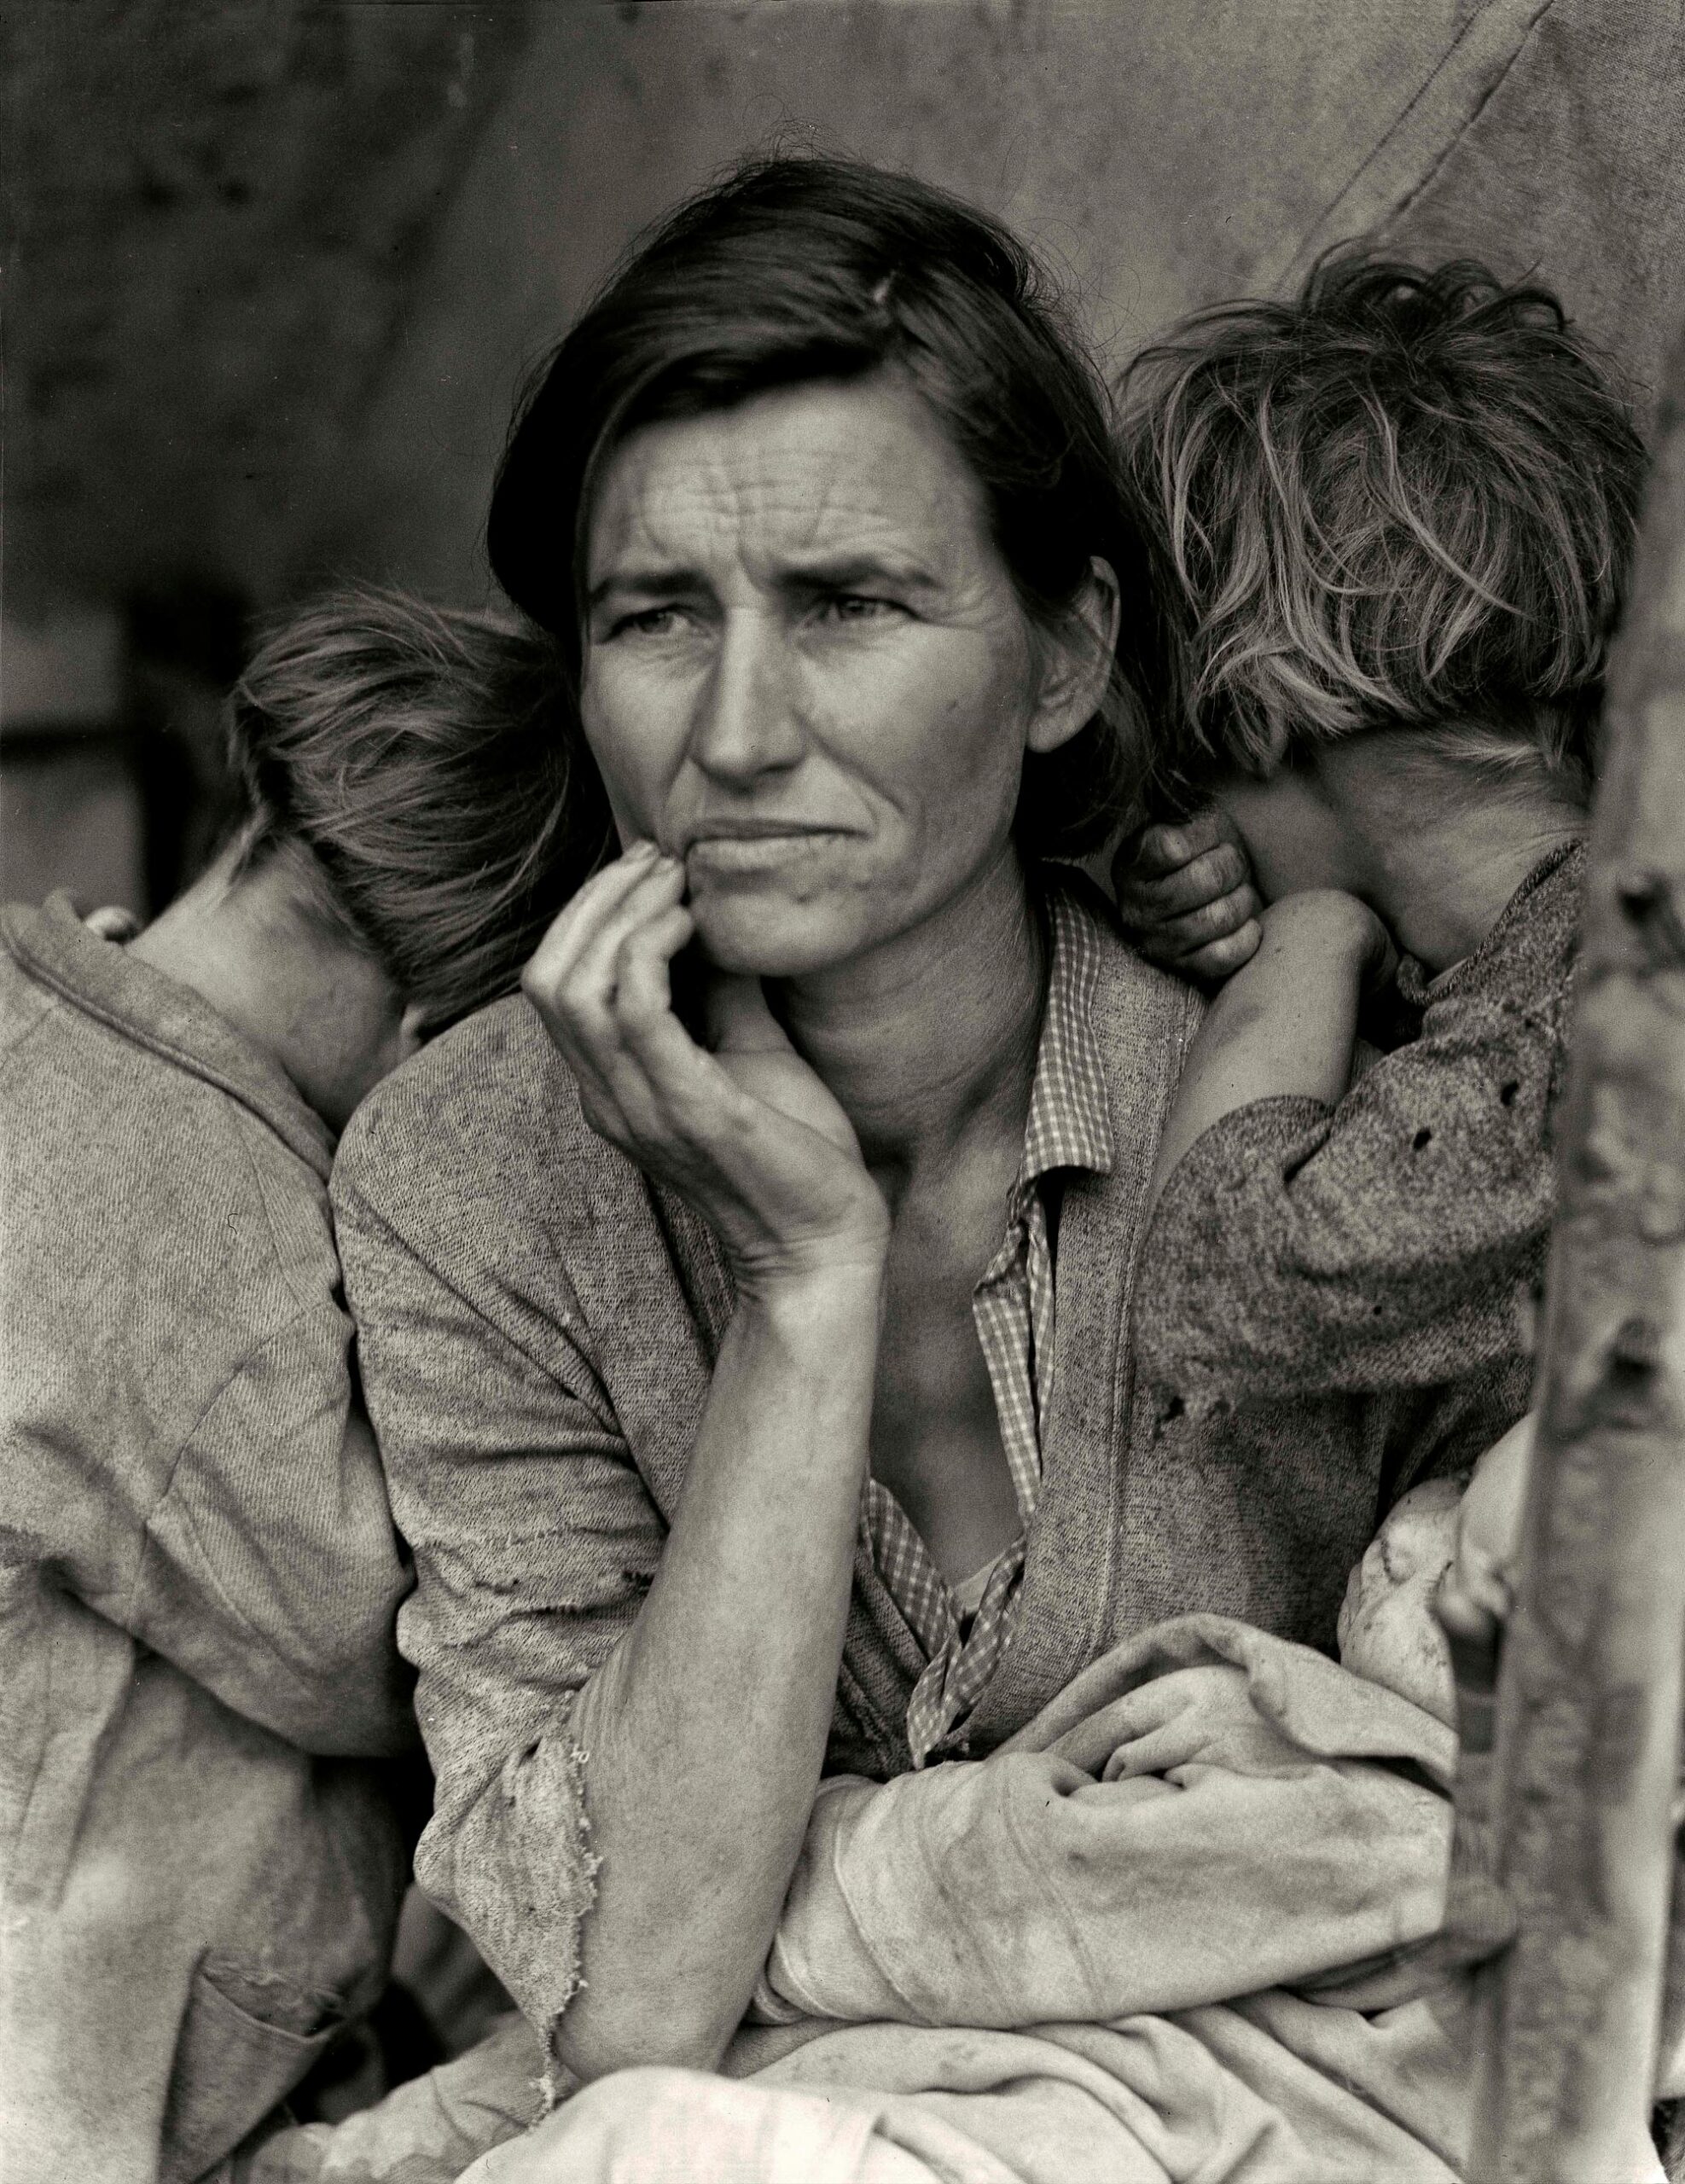 L’immagine “Migrant Mother” di Dorothea Lange è ora visibile nella mostra “Dorothea Lange. L’altra America” presso i Musei Civici di Bassano del Grappa a cura di Walter Guadagnini e Monica Poggi fino al 4 febbraio 2024.